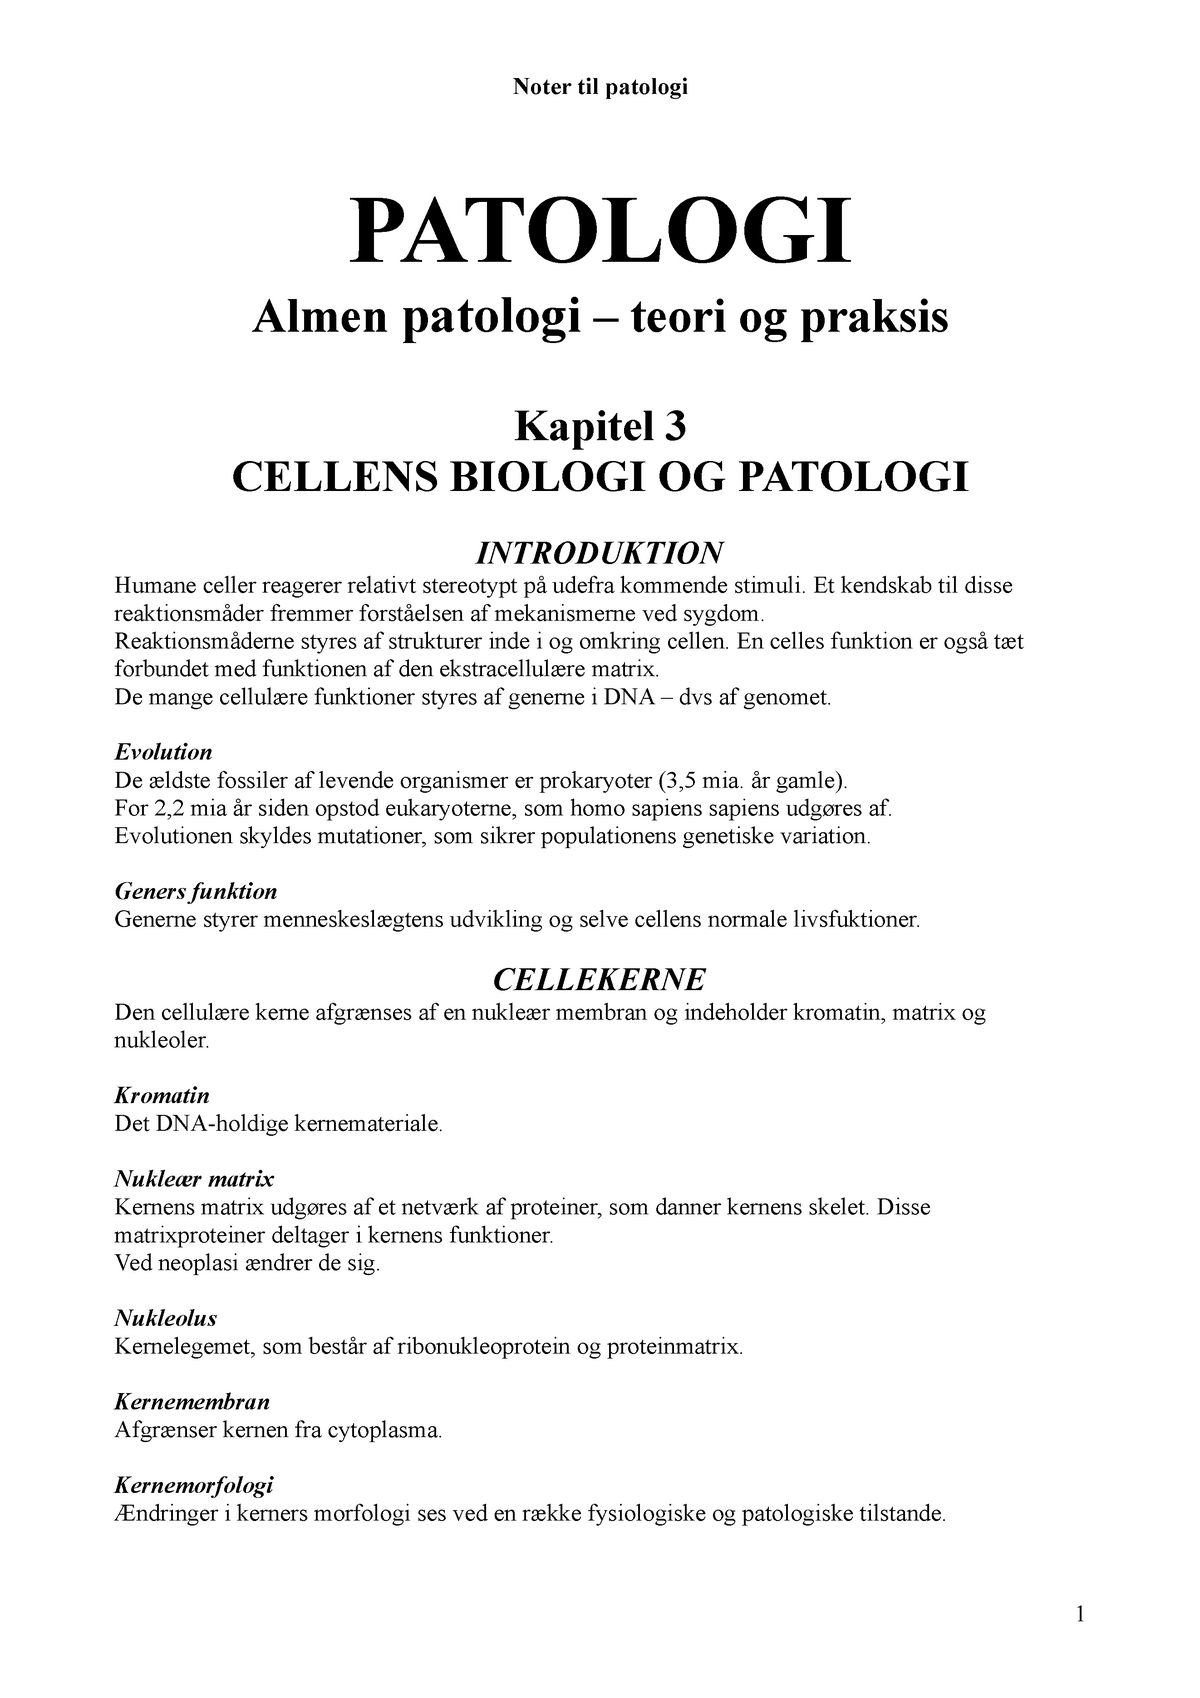 kylling Sindssyge botanist Patologikompendium - Noter der dækker godt - Kursus i basal patologi - -  StuDocu